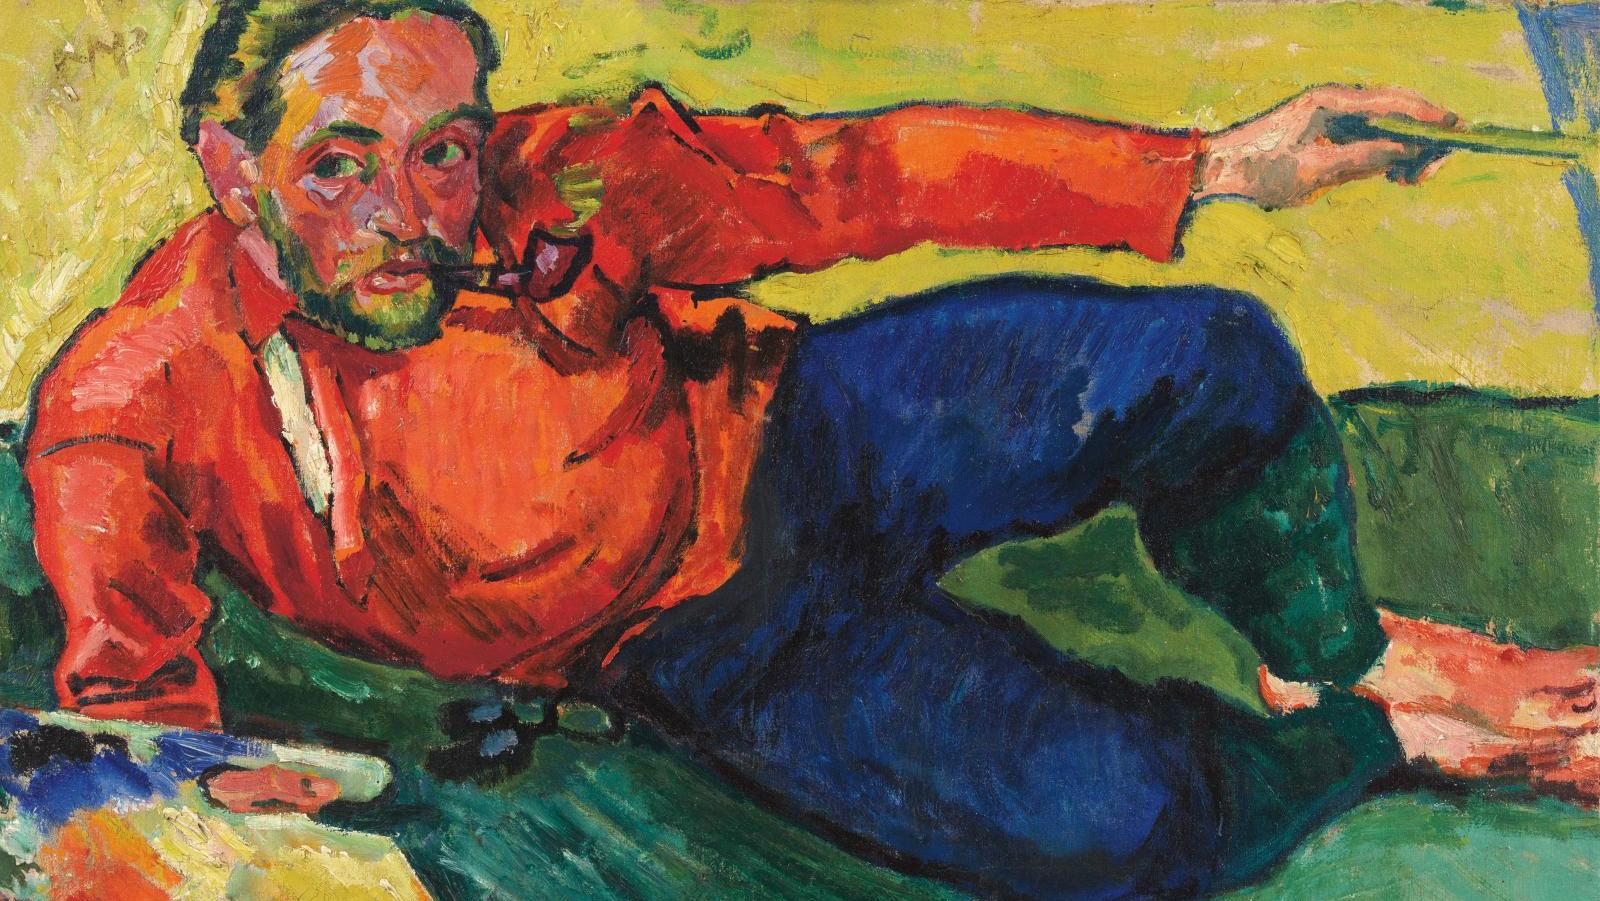 Hermann Max Pechstein (1881-1955), Autoportrait, couché, 1909, huile sur toile, 73,5 x 98,5 cm.... Pechstein ou l’apogée de l’expressionnisme allemand